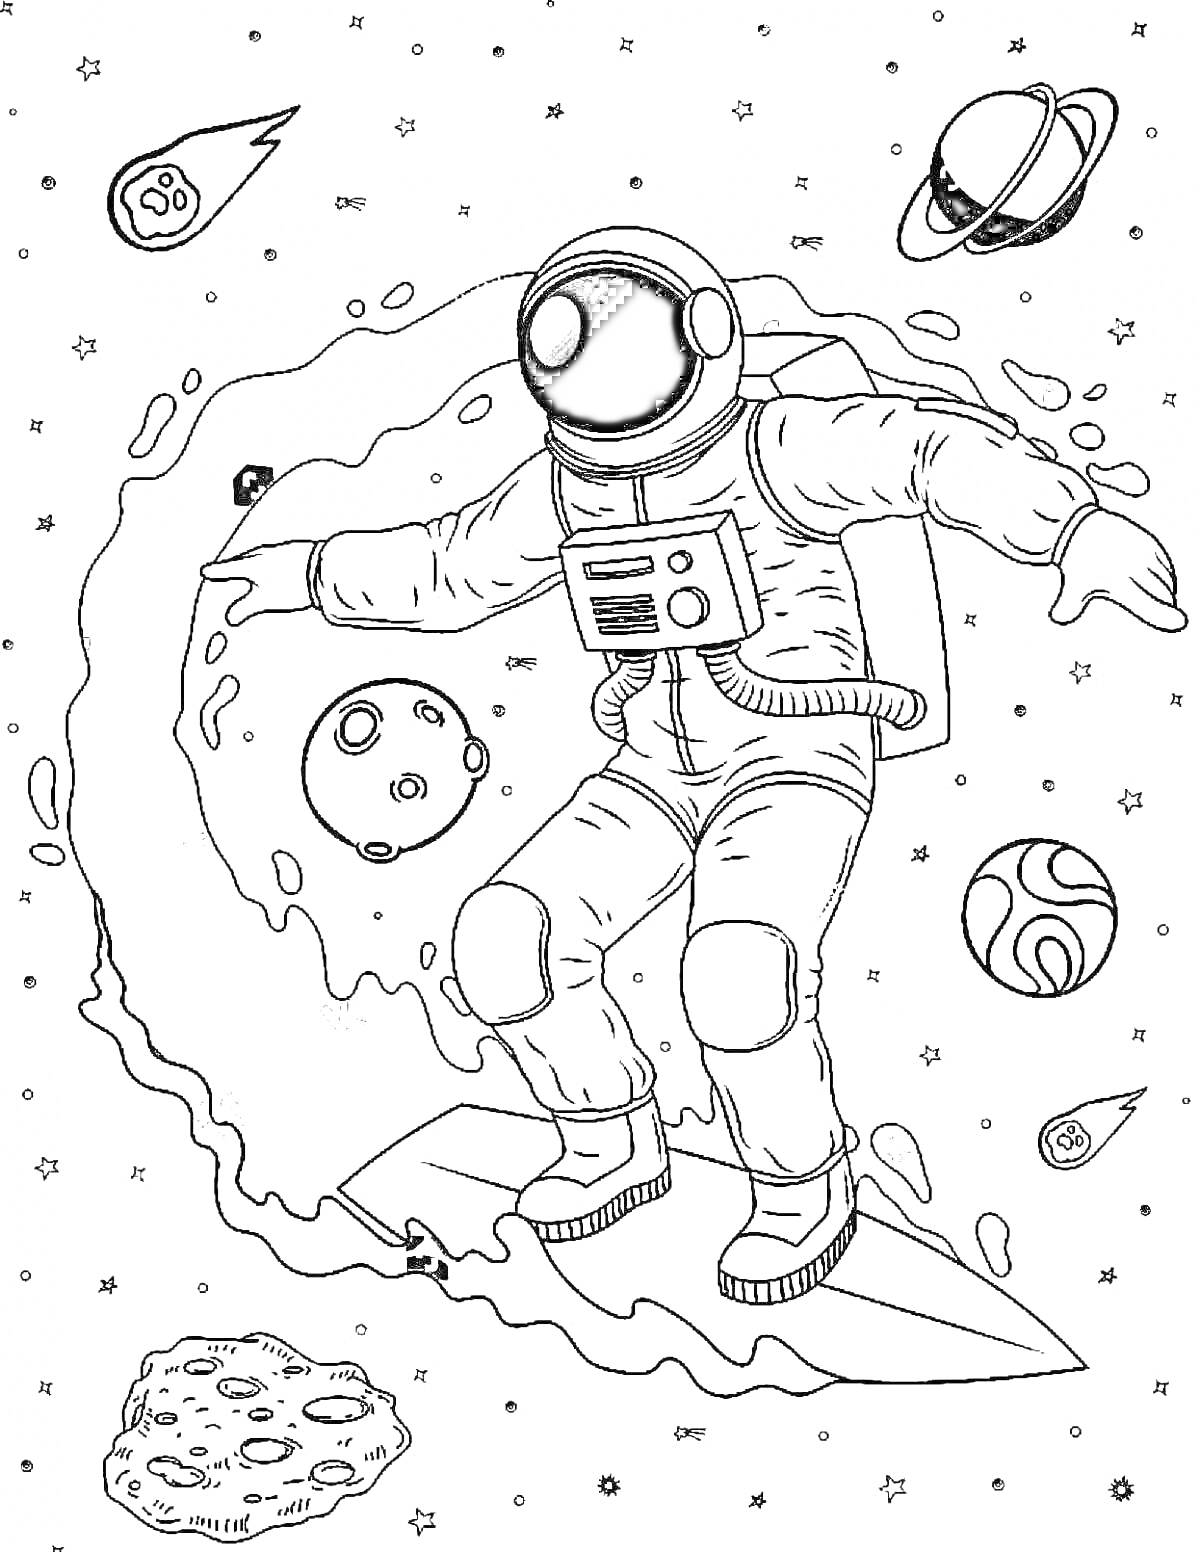  Космонавт на серфинговой доске в космосе среди планет, метеоритов и звезд